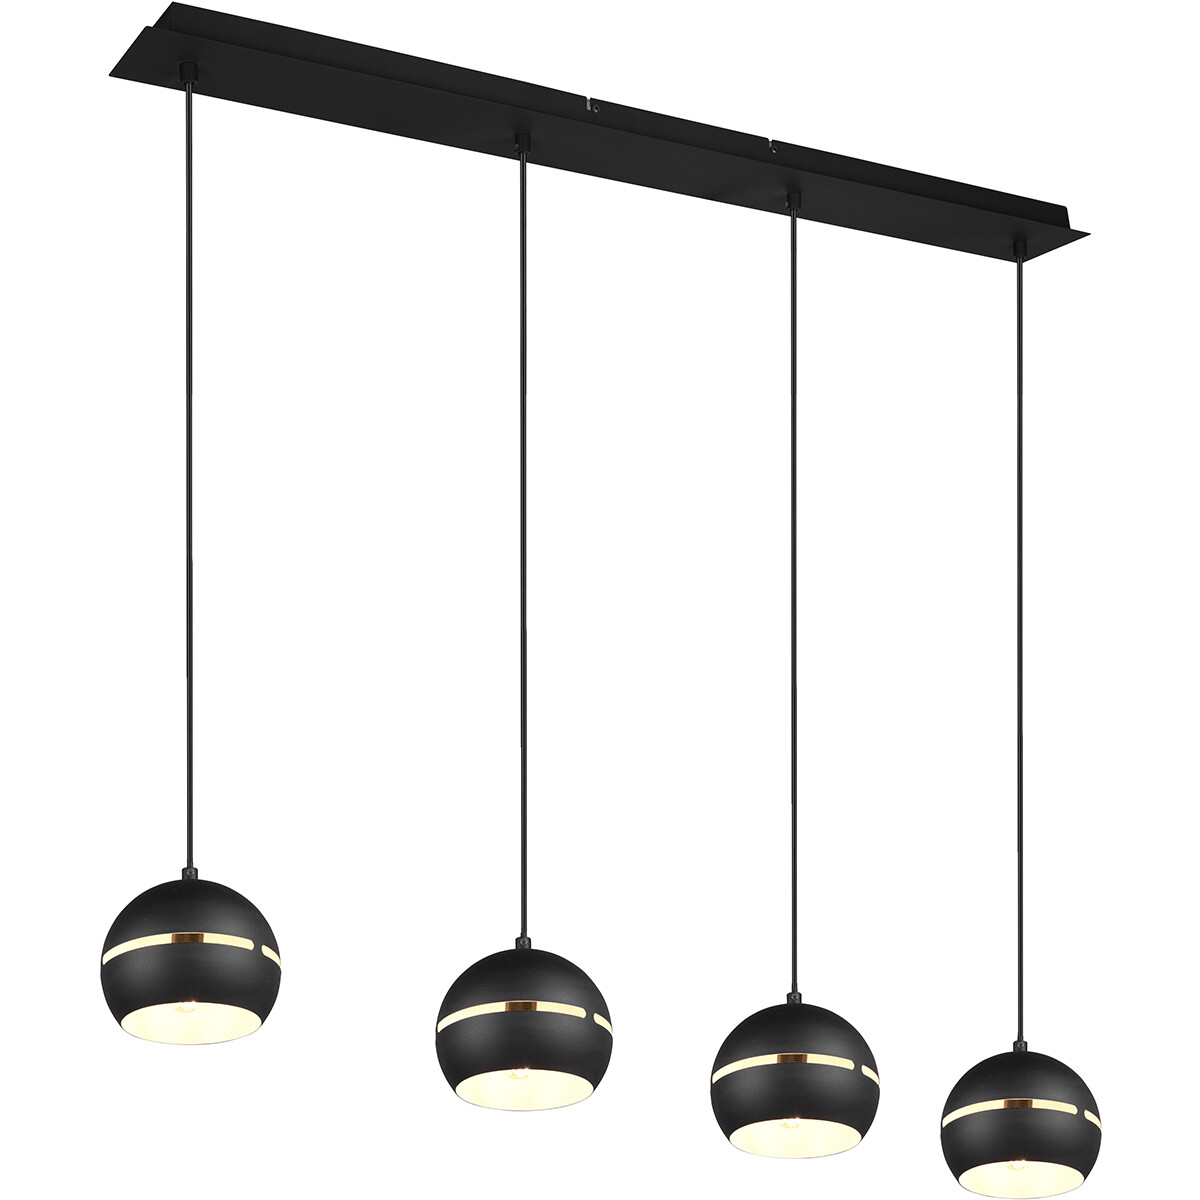 LED Hanglamp Hangverlichting Trion Flatina E14 Fitting 4-lichts Rechthoek Mat Zwart Aluminium